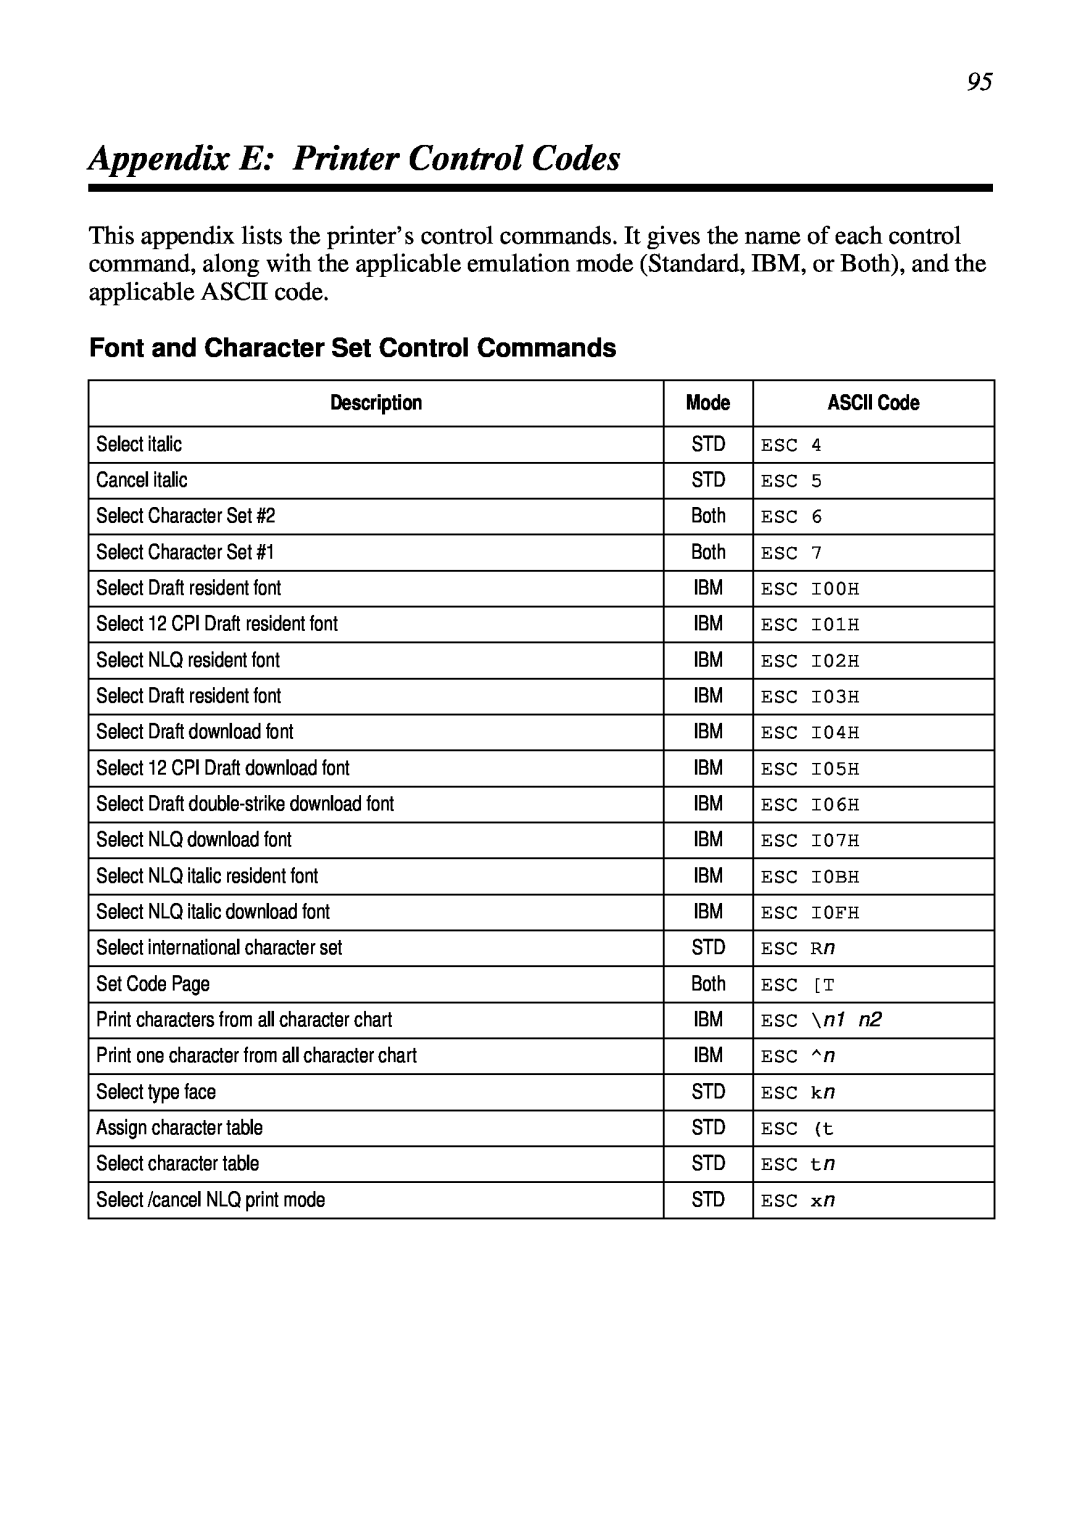 Star Micronics HA15 80825072, LC-1521, LC-1511 Appendix E Printer Control Codes, Font and Character Set Control Commands 